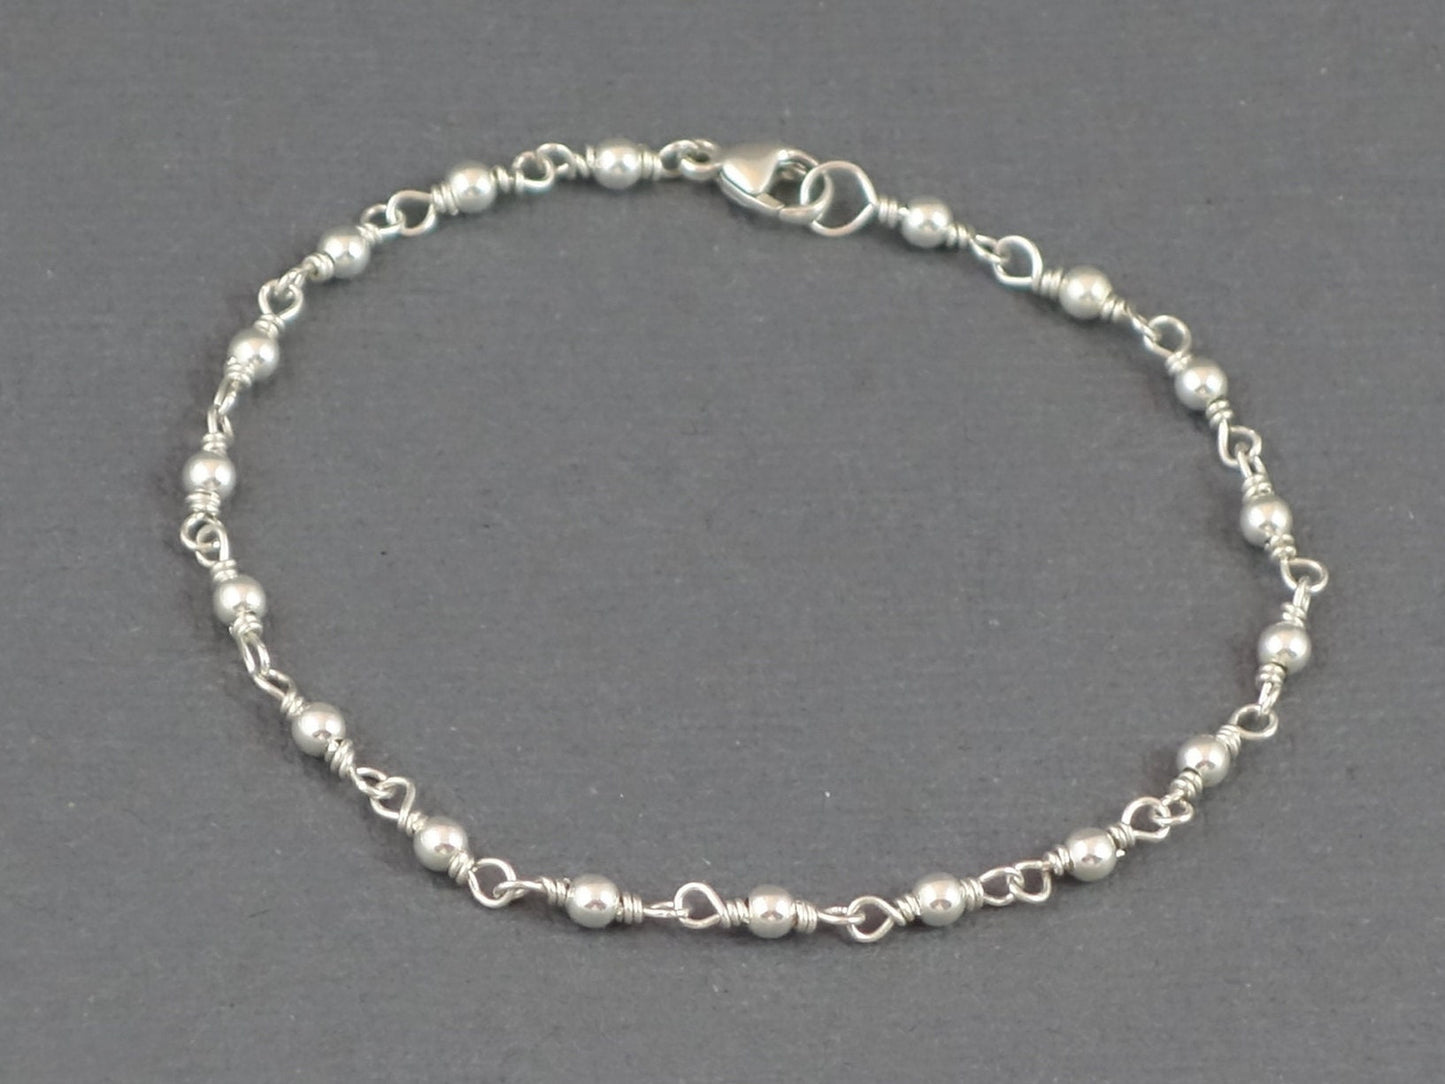 Shiny Silver Bracelet, Silver Wire Wrapped Bracelet, Silver Bead Bracelet, Silver Bracelet, Silver Beaded bracelet